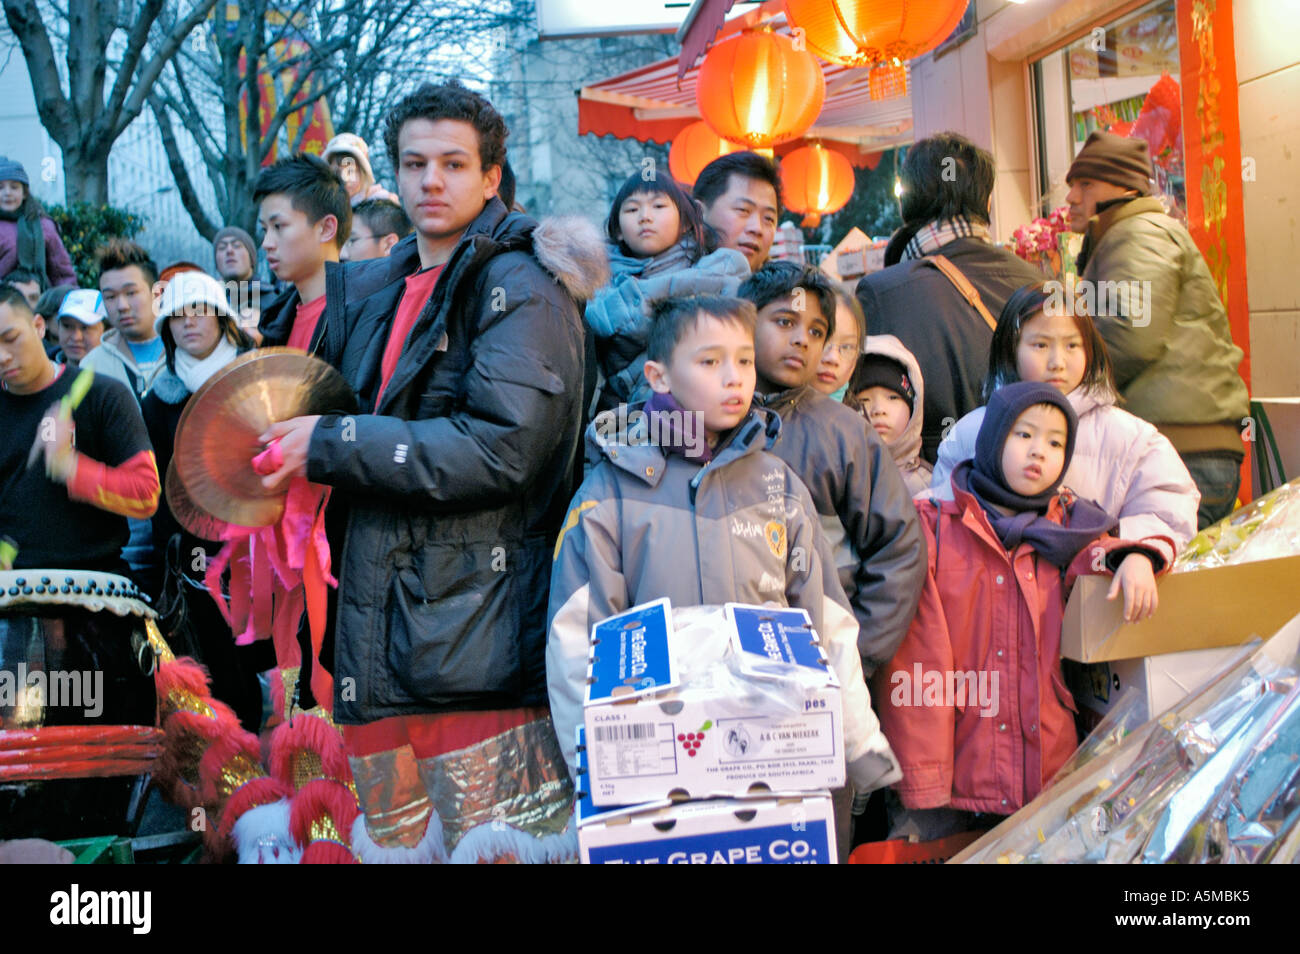 Paris Frankreich, Französisch Familien mit Kindern feiern das „Chinesische Neujahr“ auf dem Street Festival in Chinatown, Menschenmenge, Kinder (Vielfalt) Stockfoto